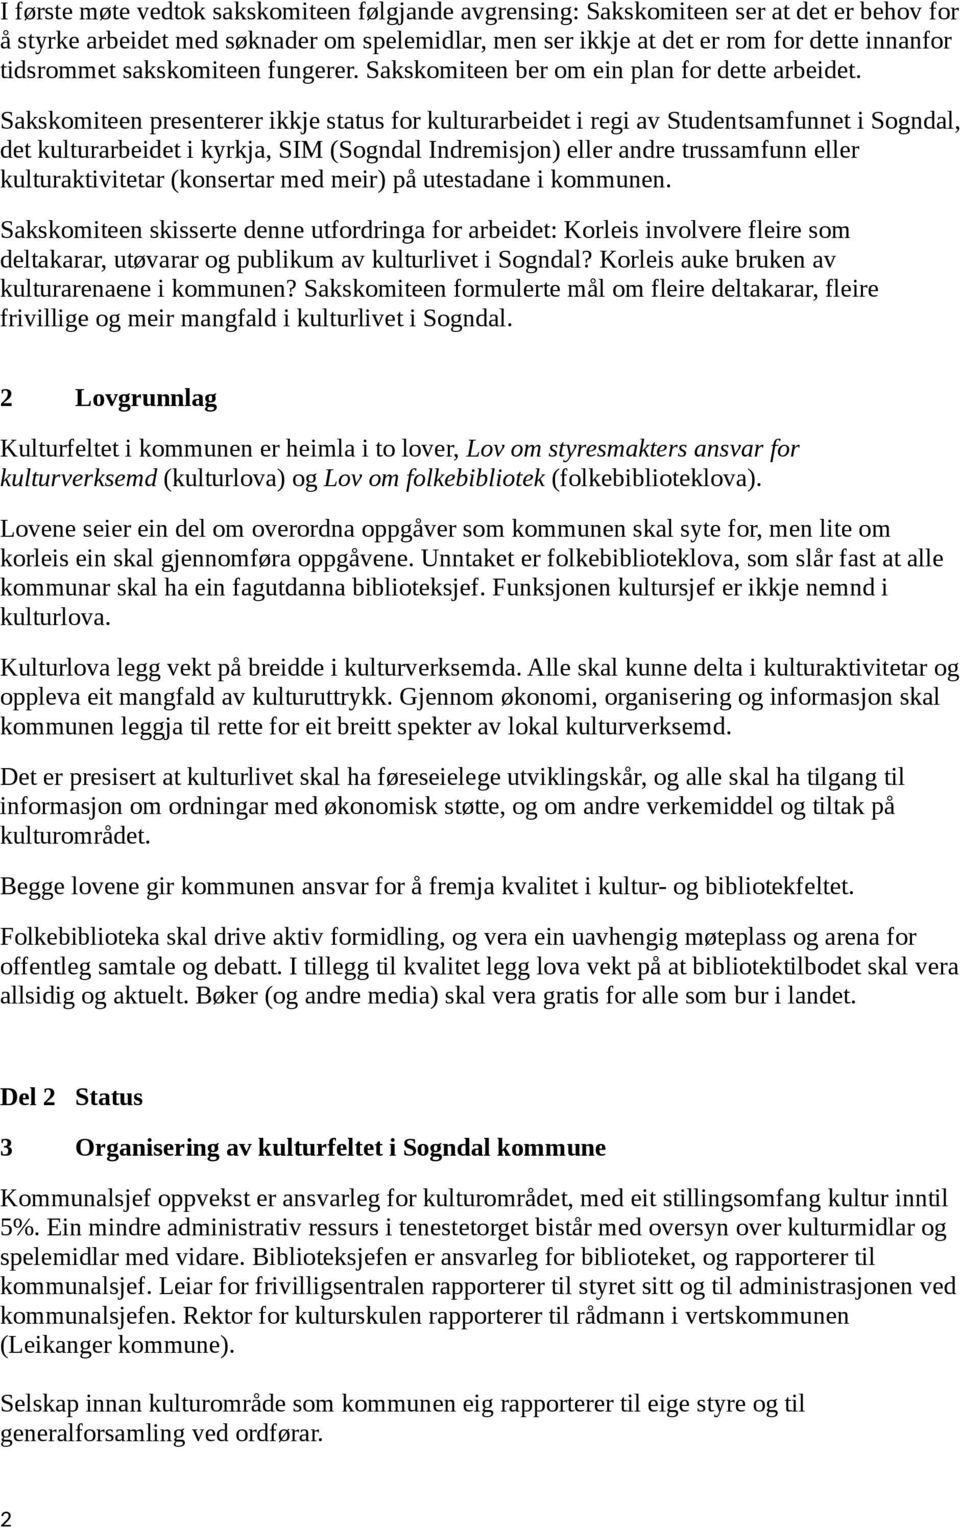 Sakskomiteen presenterer ikkje status for kulturarbeidet i regi av Studentsamfunnet i Sogndal, det kulturarbeidet i kyrkja, SIM (Sogndal Indremisjon) eller andre trussamfunn eller kulturaktivitetar